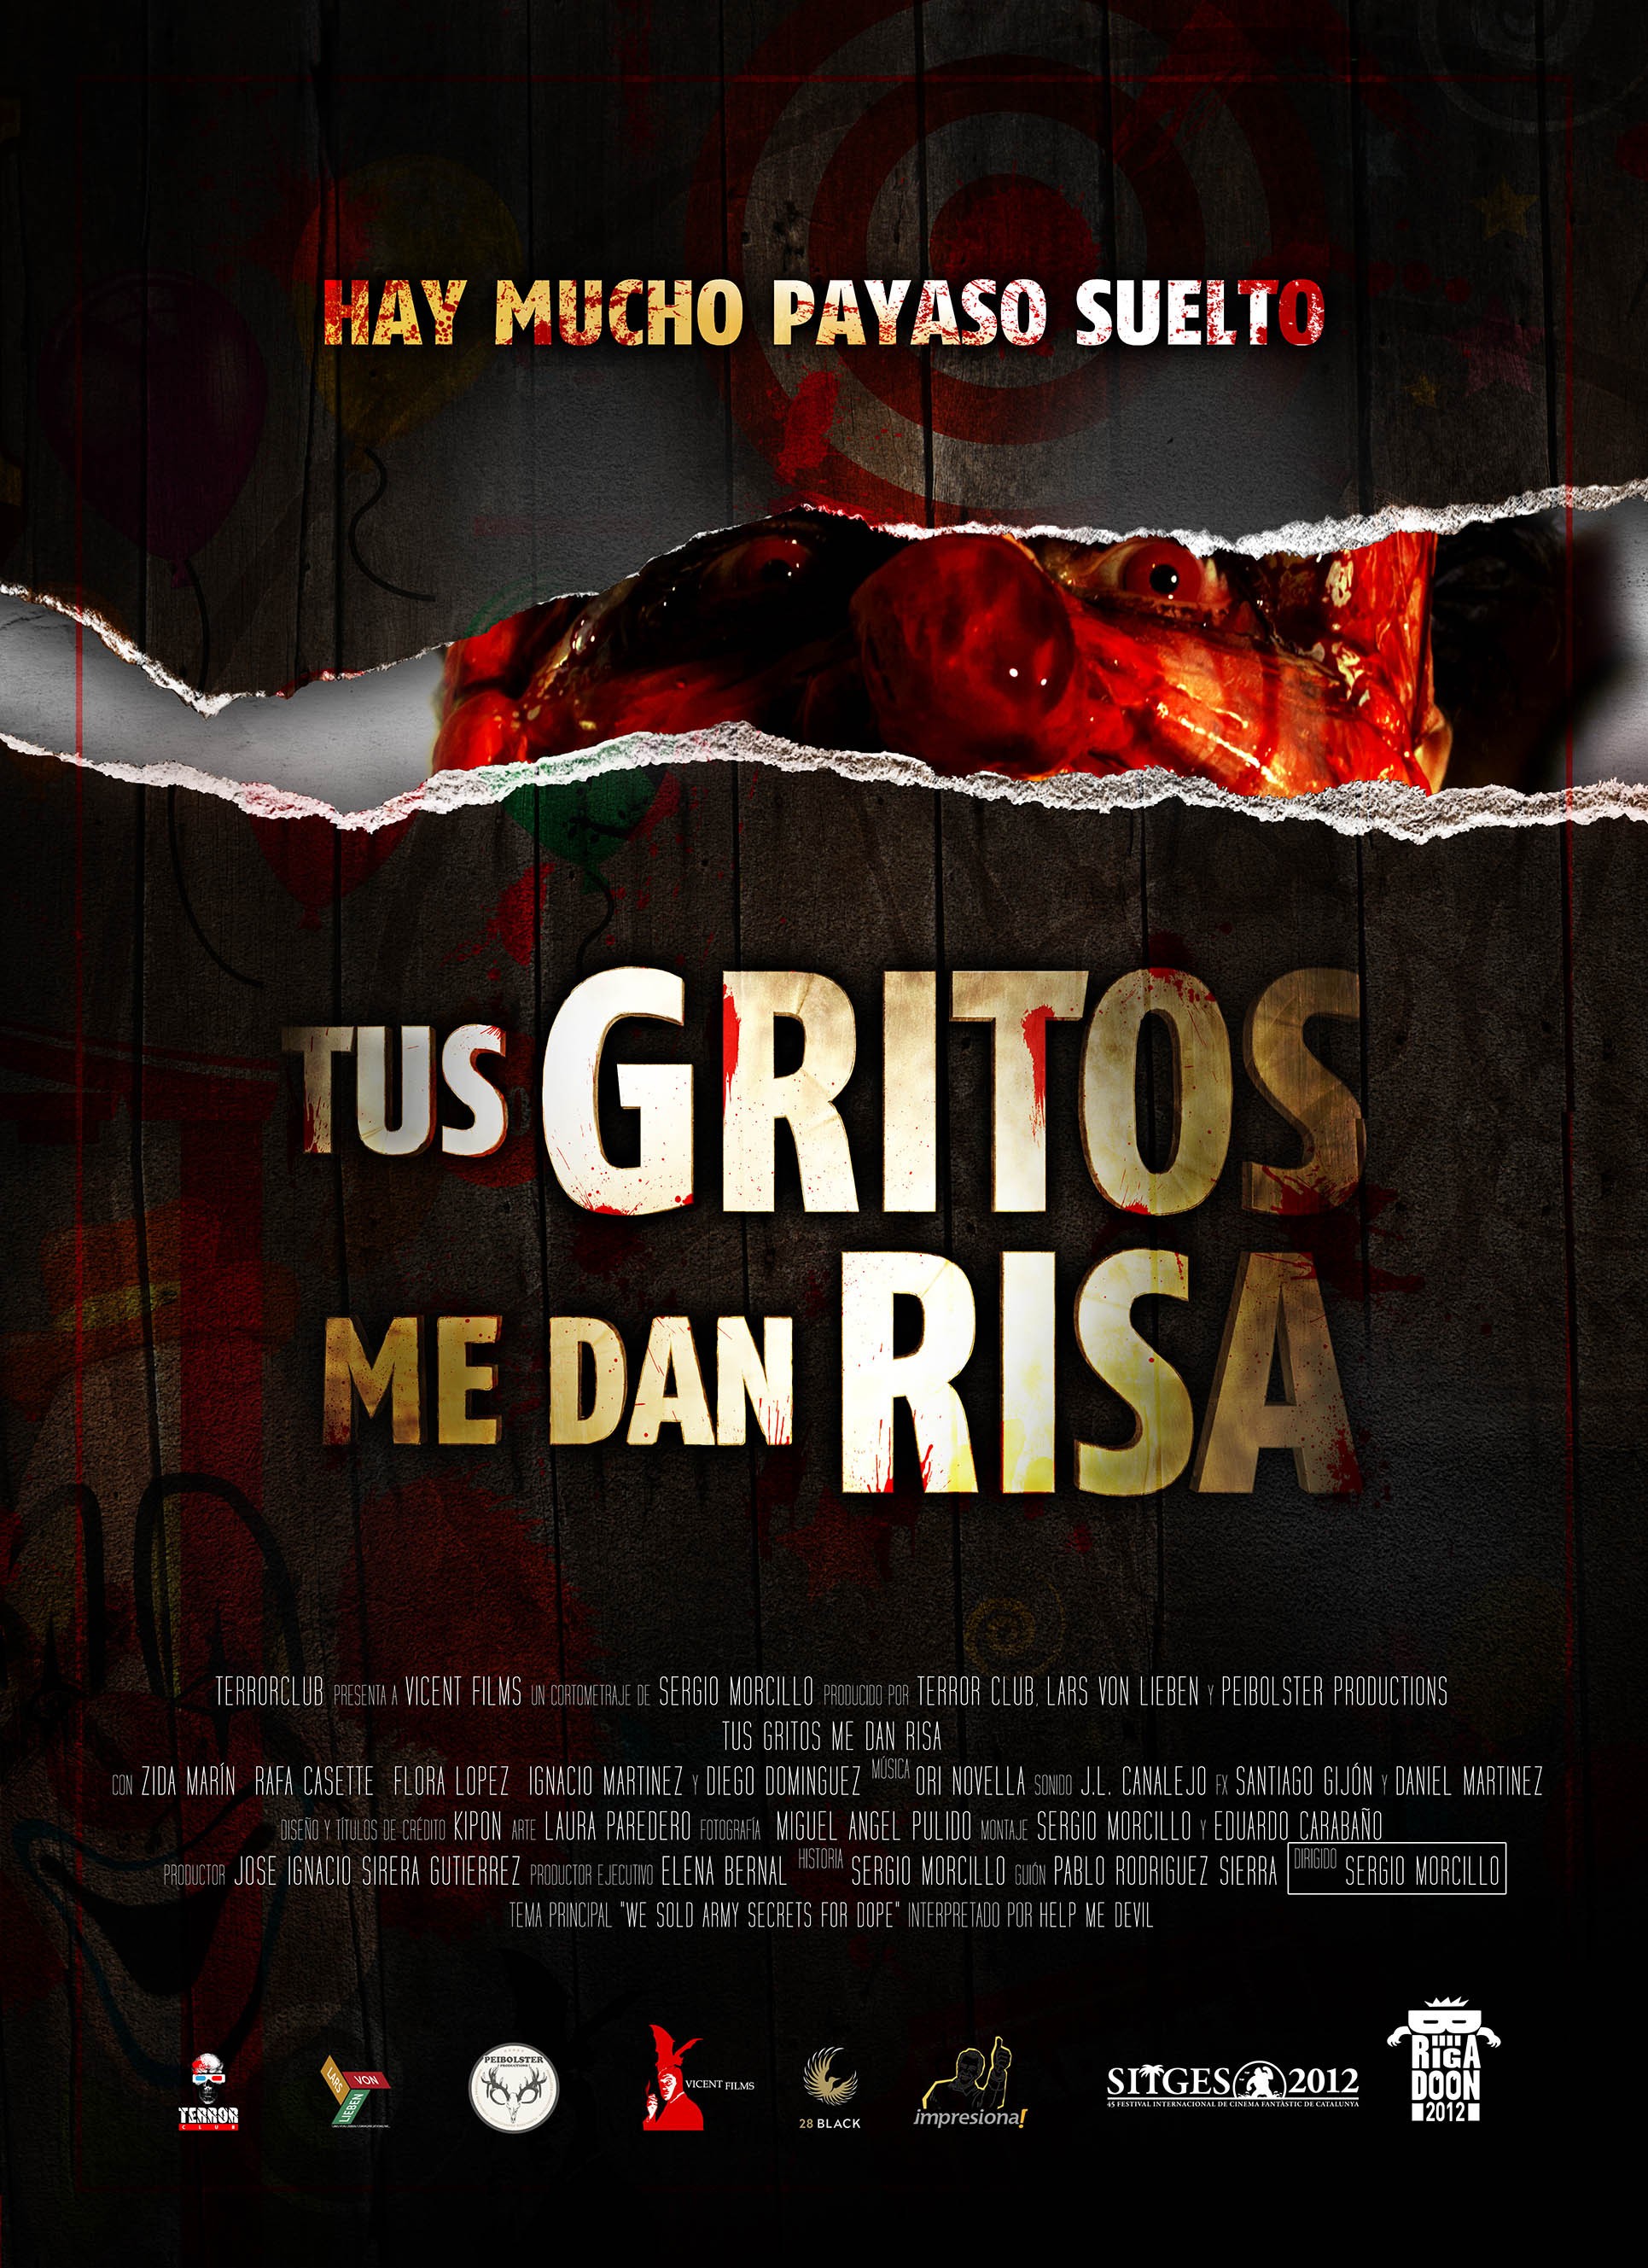 Mega Sized Movie Poster Image for Tus gritos me dan risa